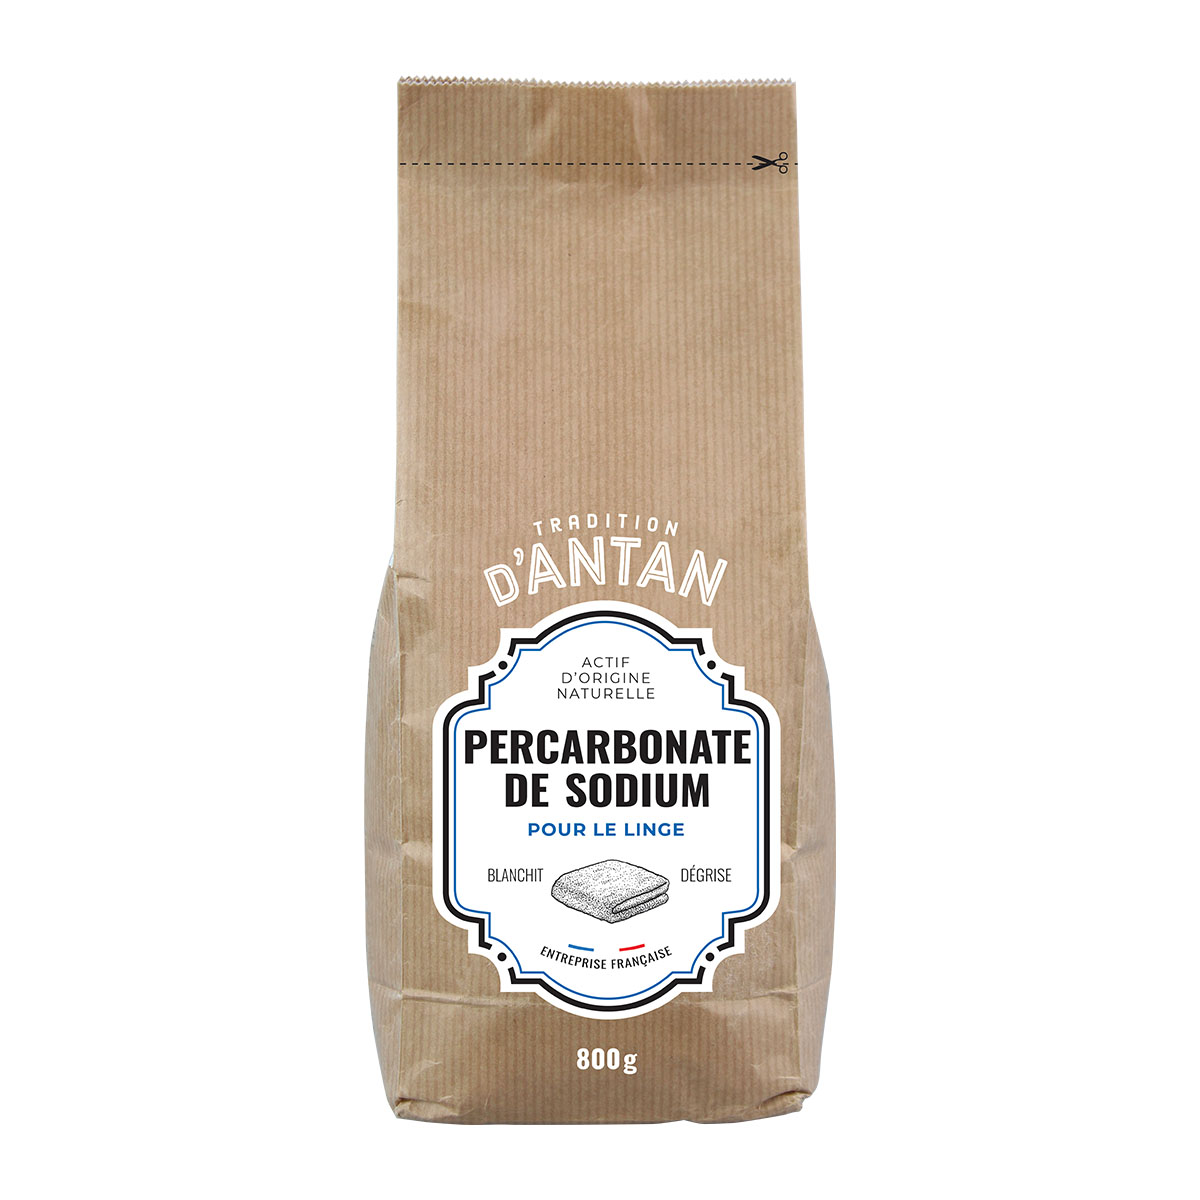 Percarbonate de sodium – Tradition d'antan